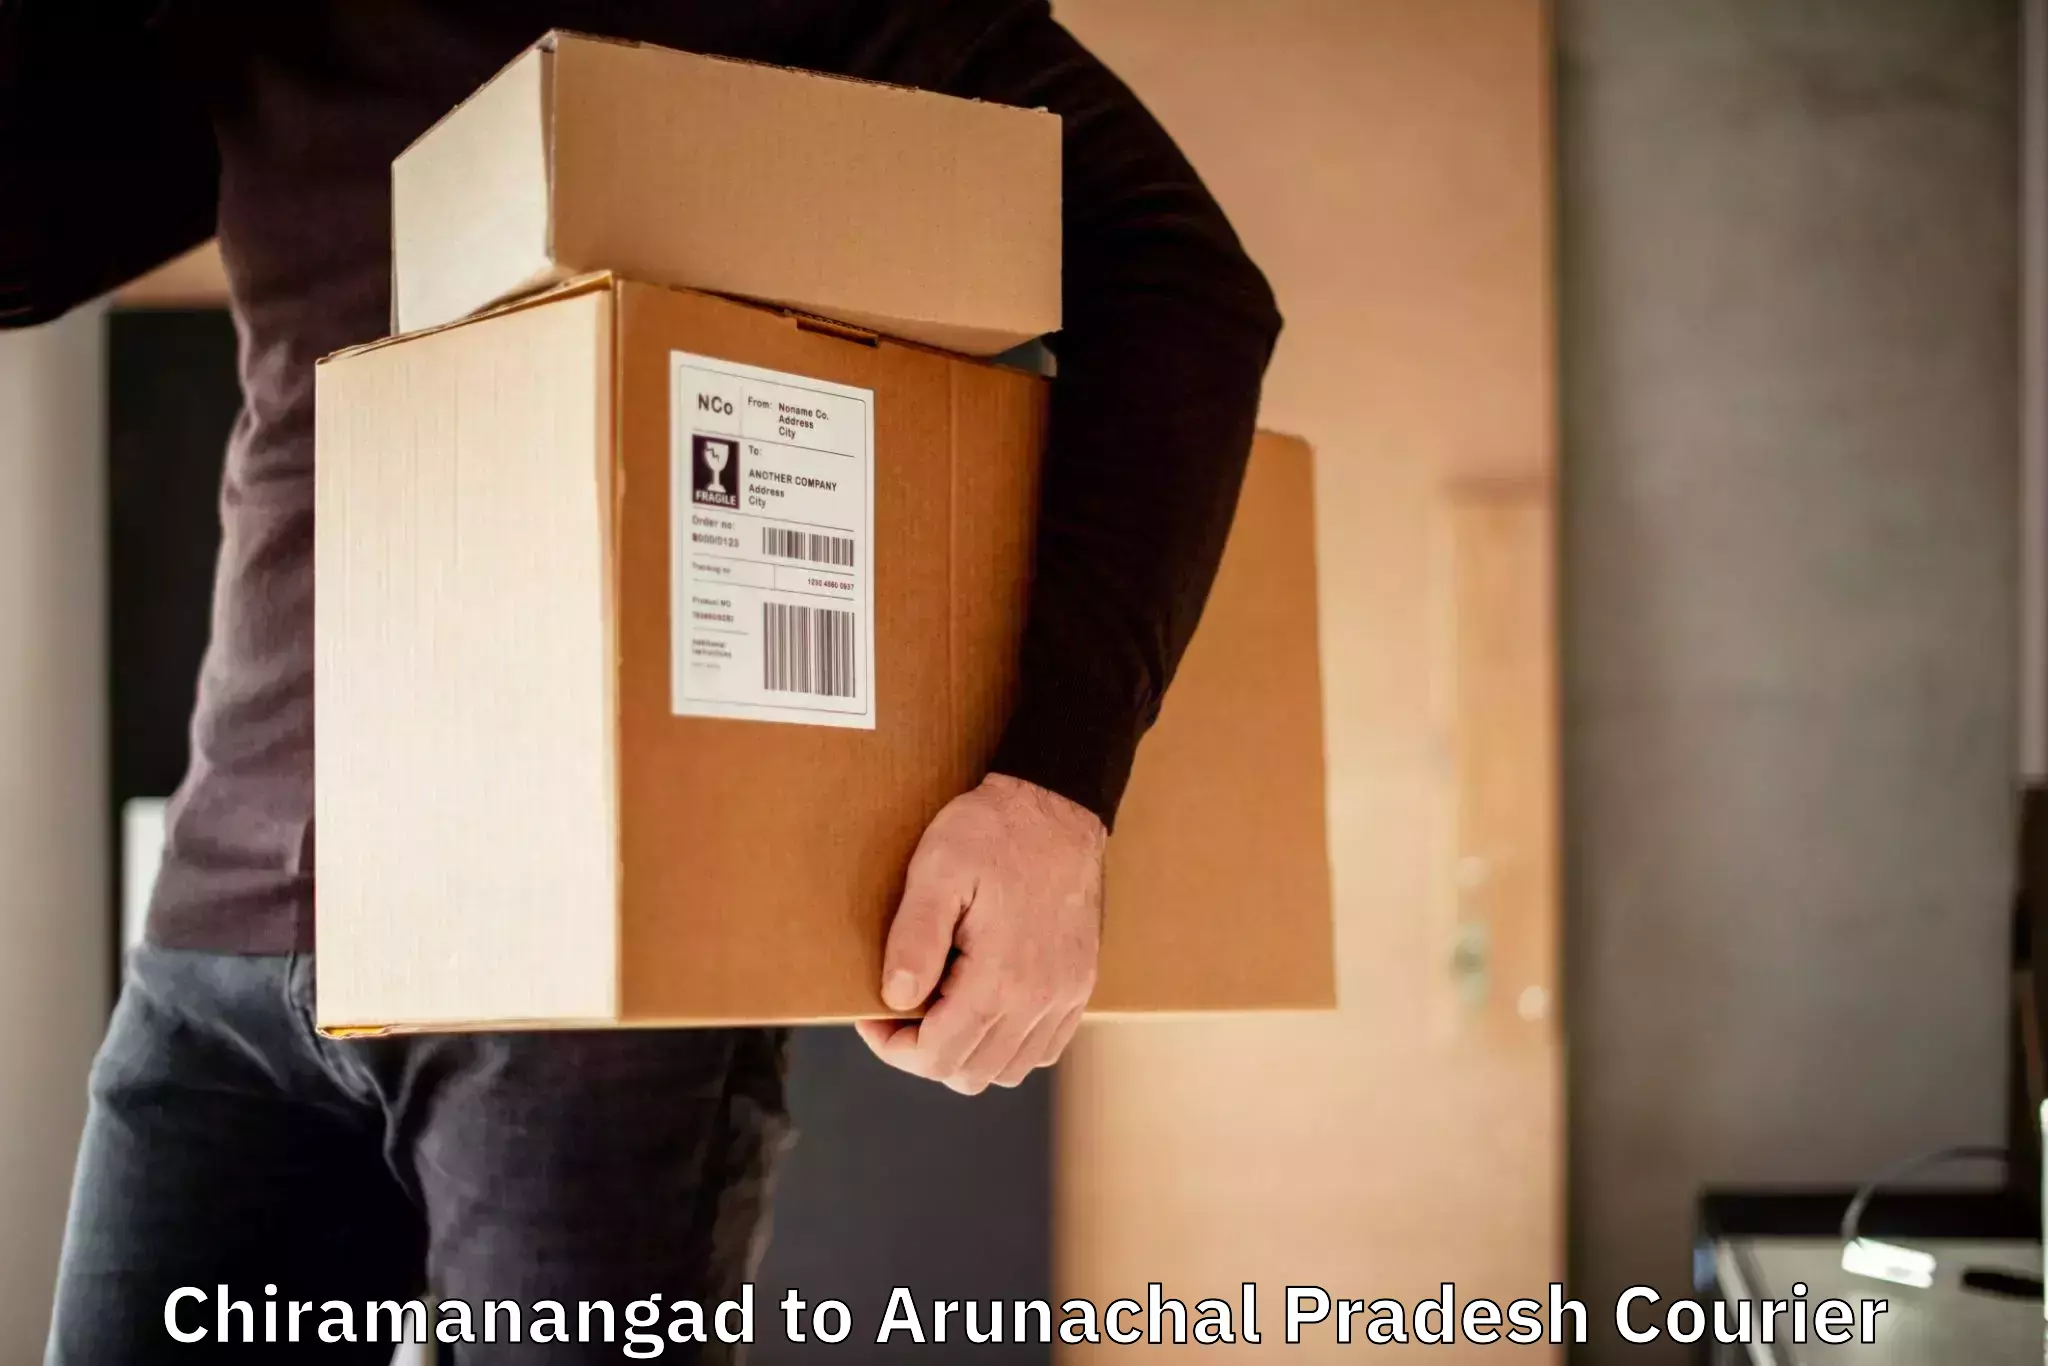 High-capacity courier solutions Chiramanangad to Arunachal Pradesh